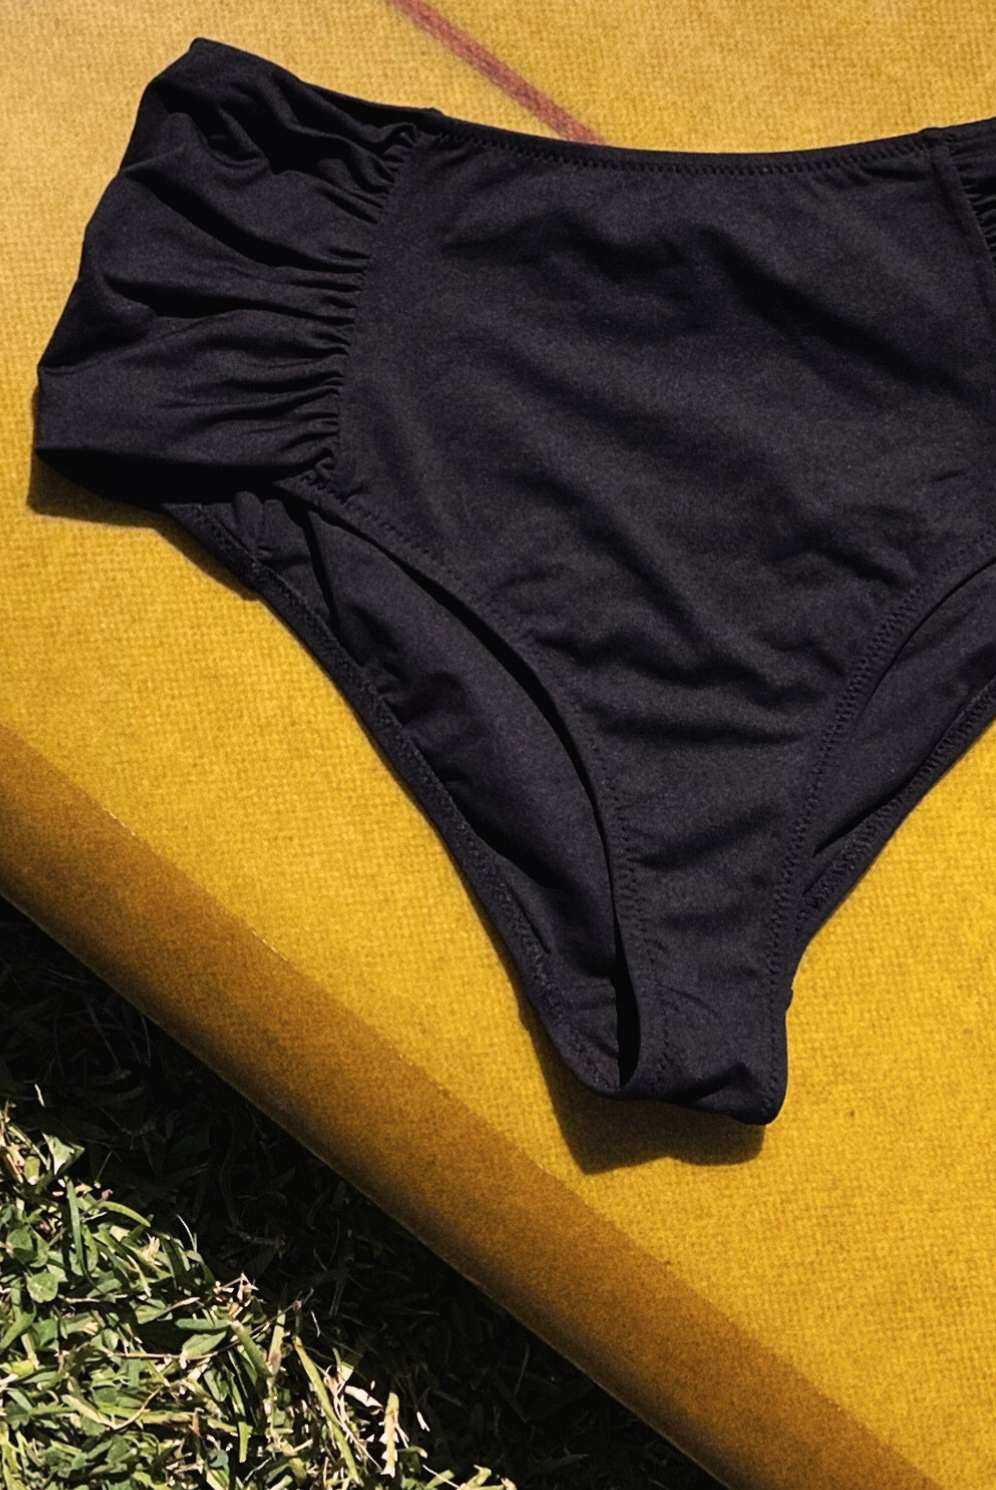 Bas de maillot culotte haute noire - Jolies Mômes, lingerie française éco-responsable. Fabrication Espagne série limitée